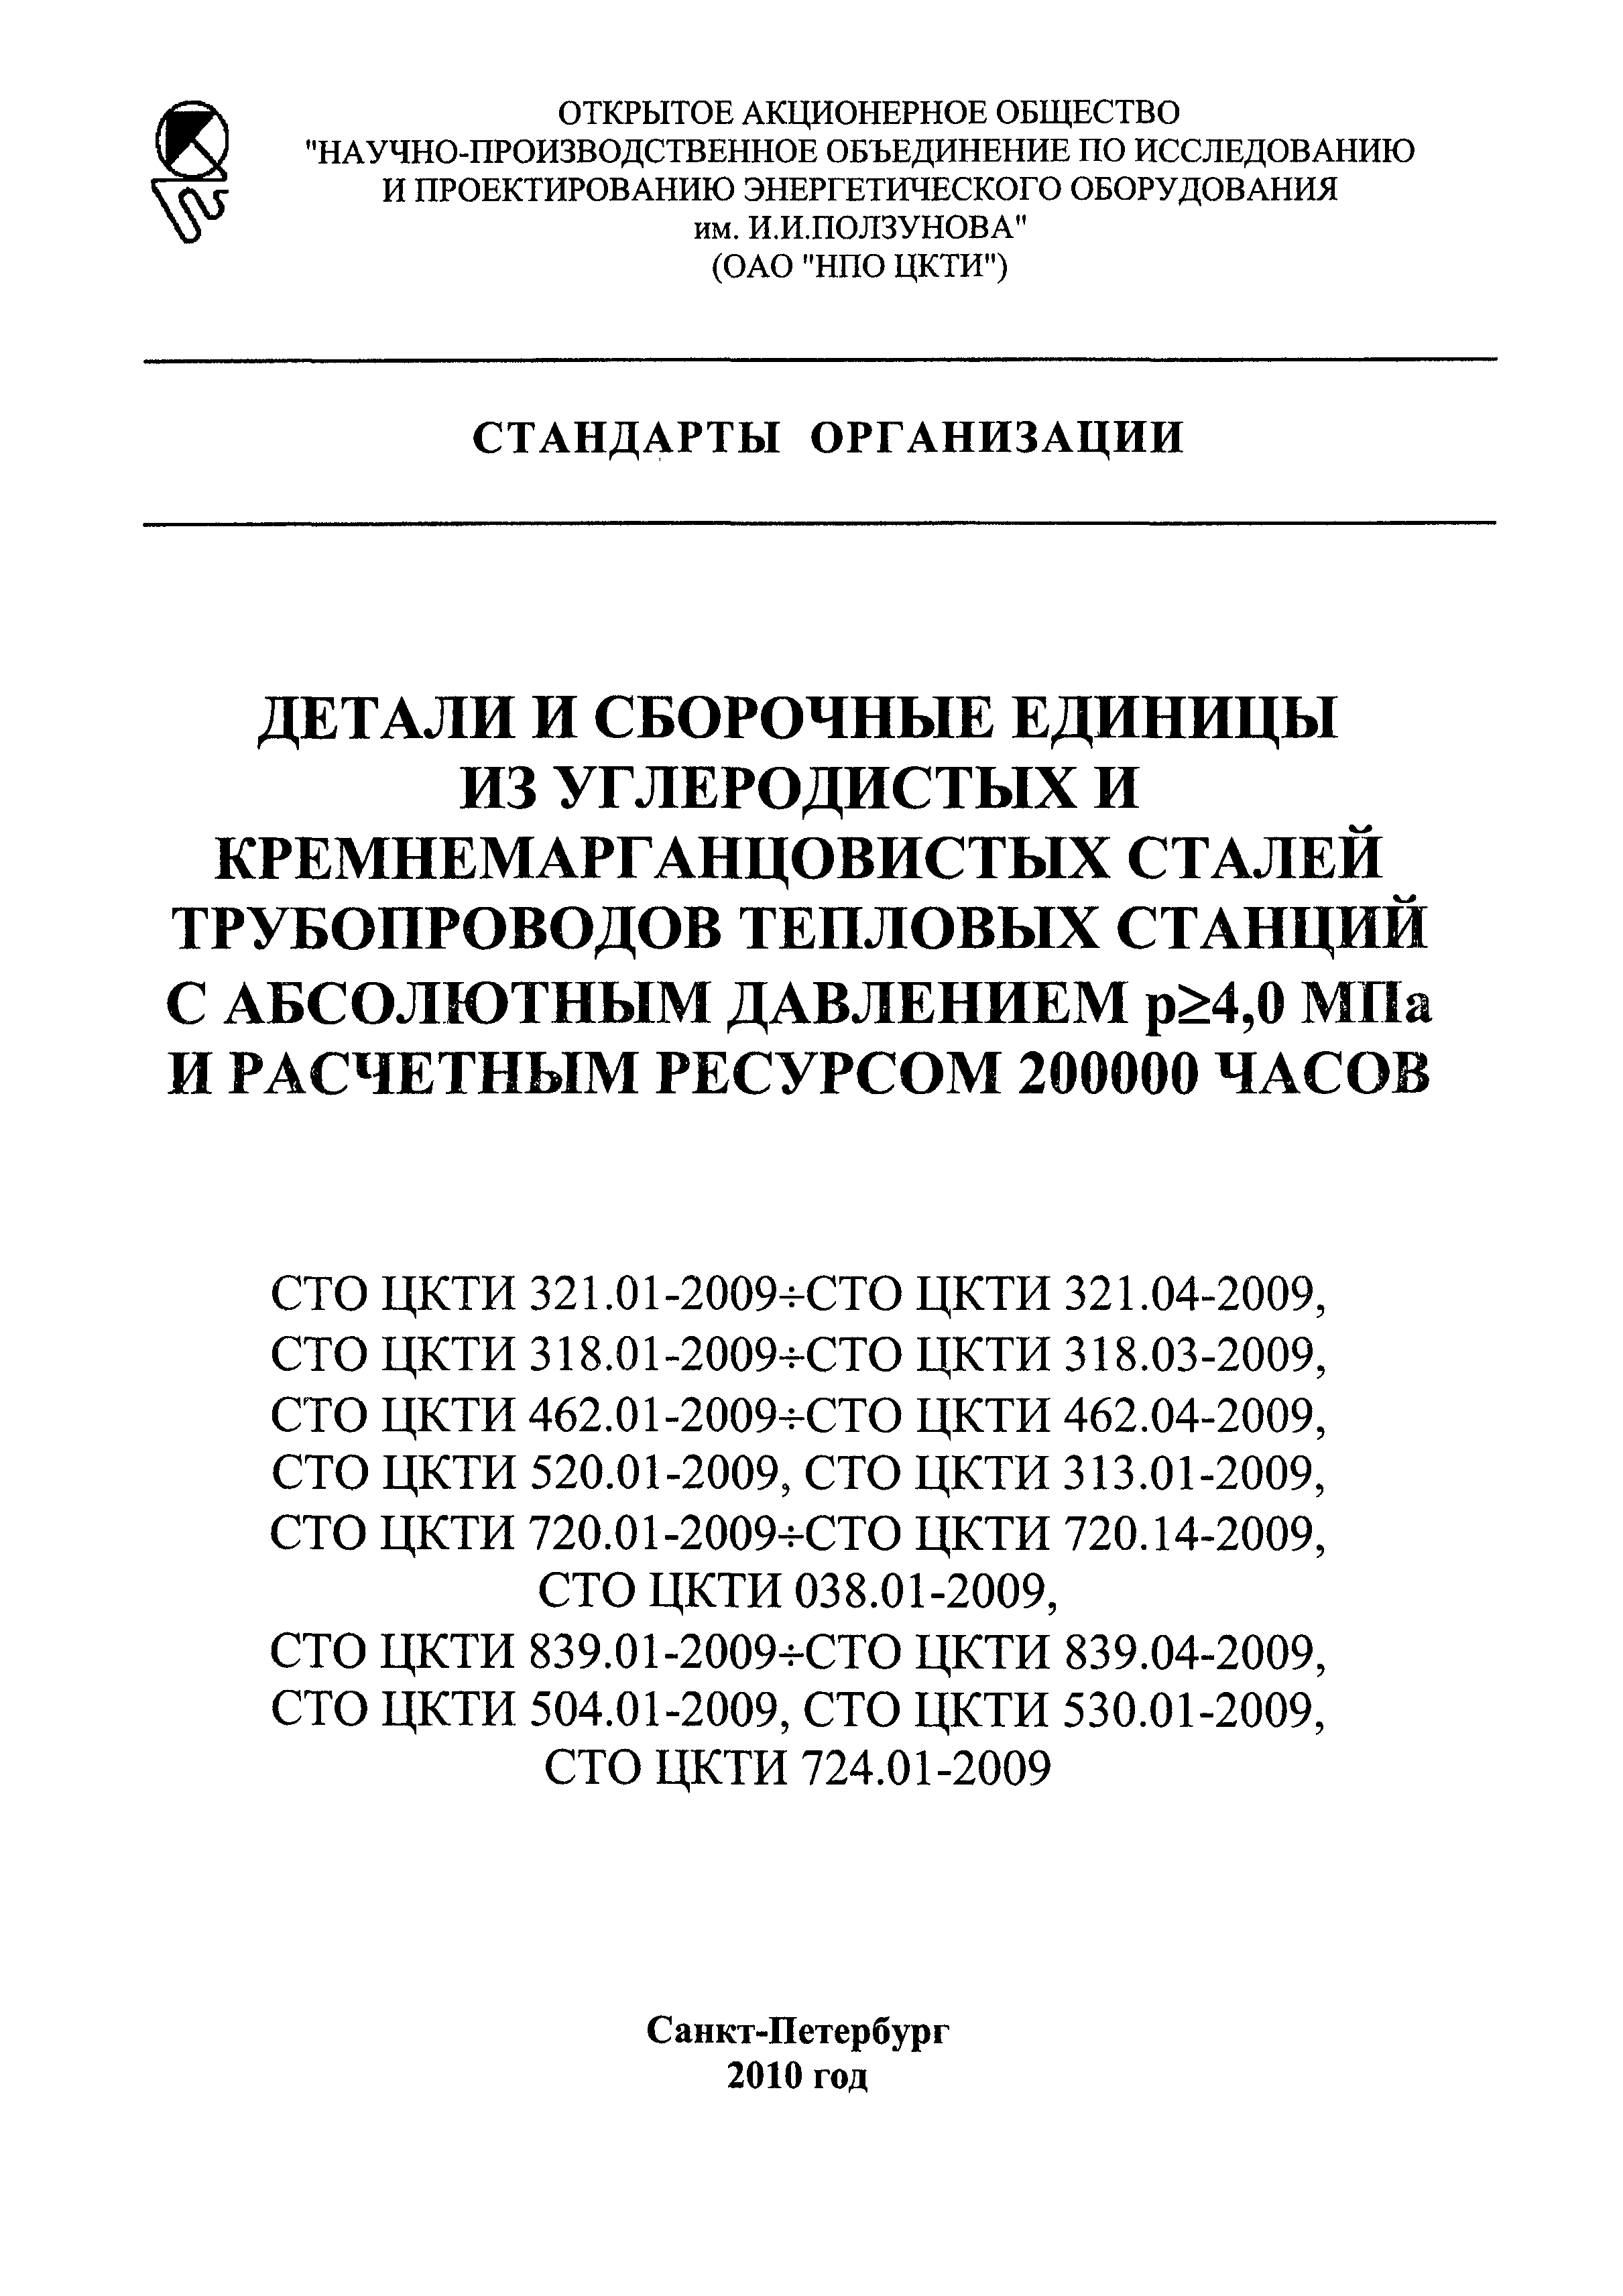 СТО ЦКТИ 720.12-2009